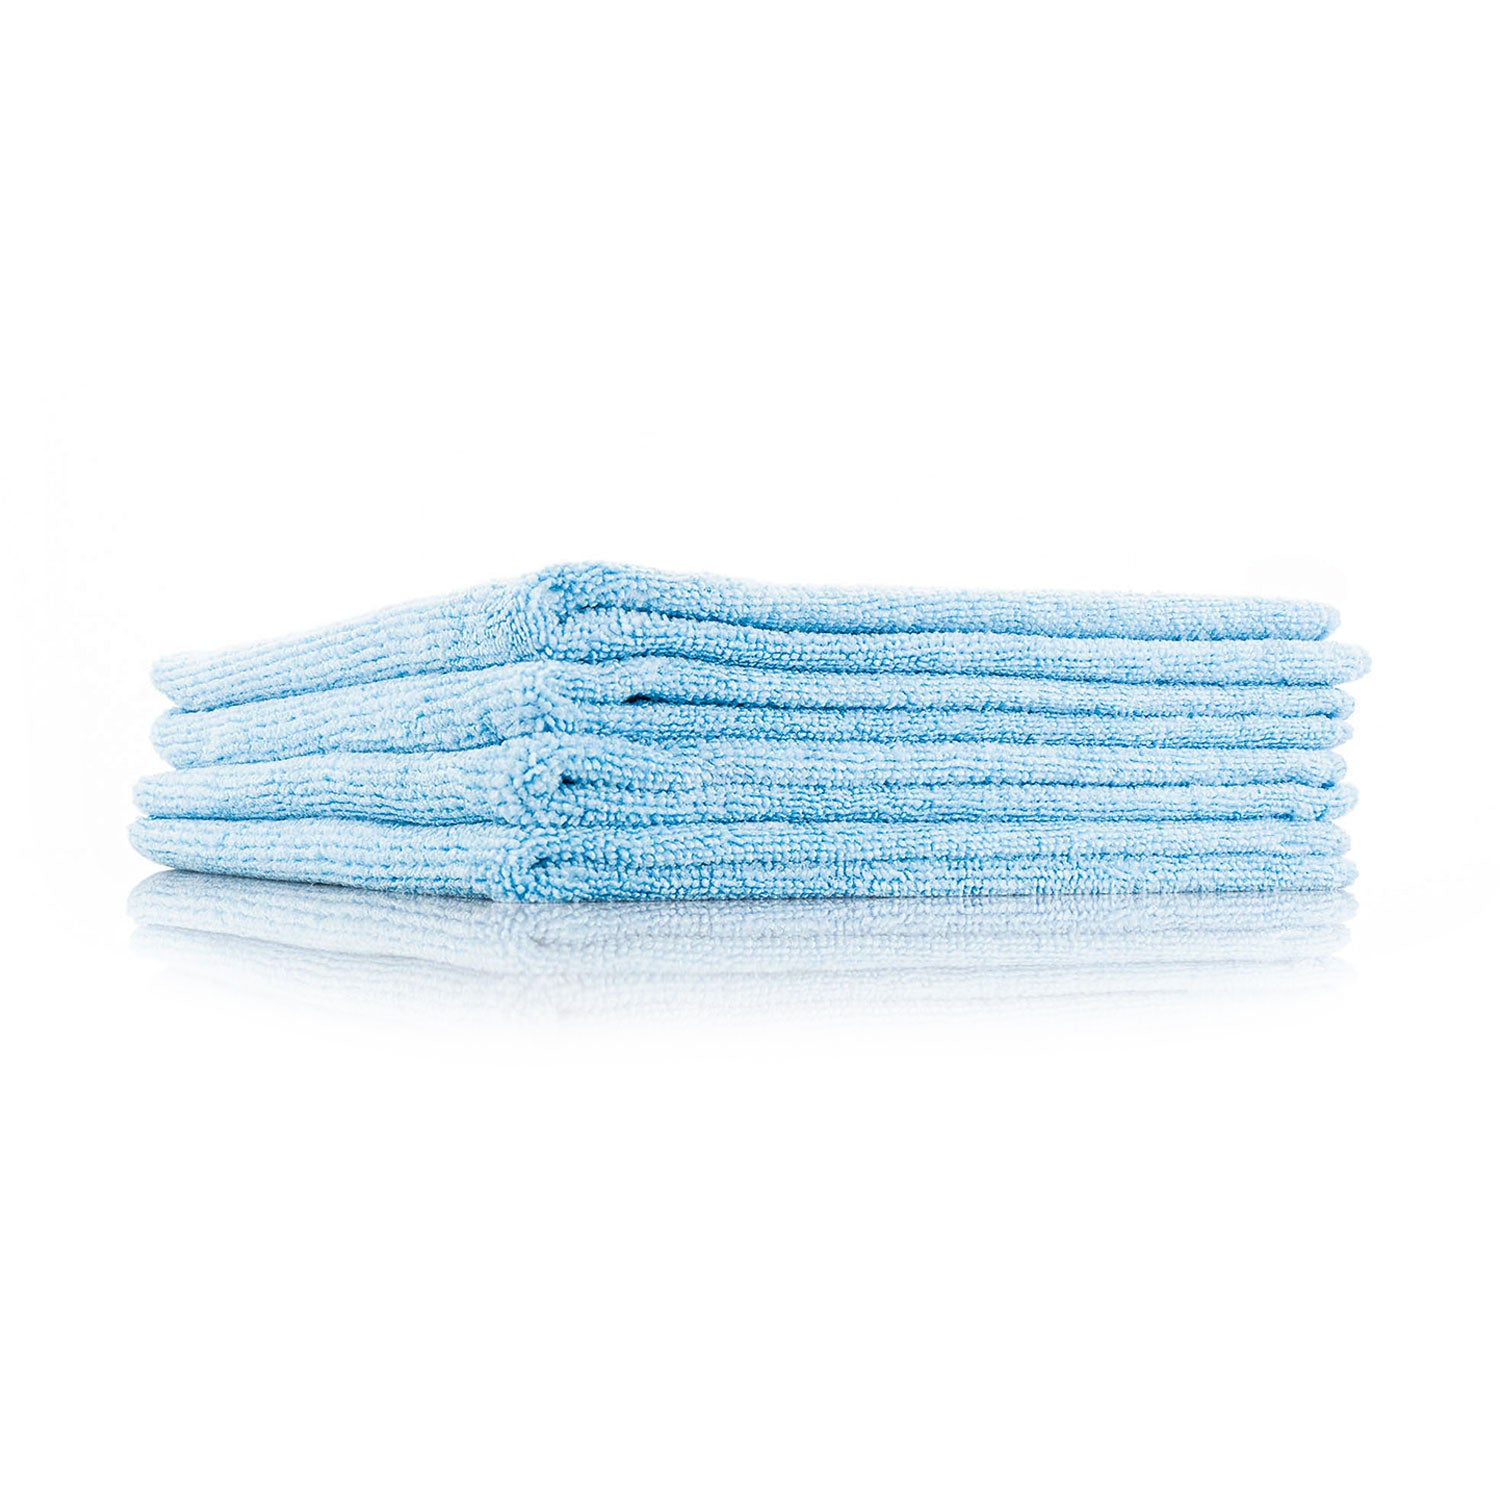 mf1b-blue-microfiber-car-detailing-towel-4-pack